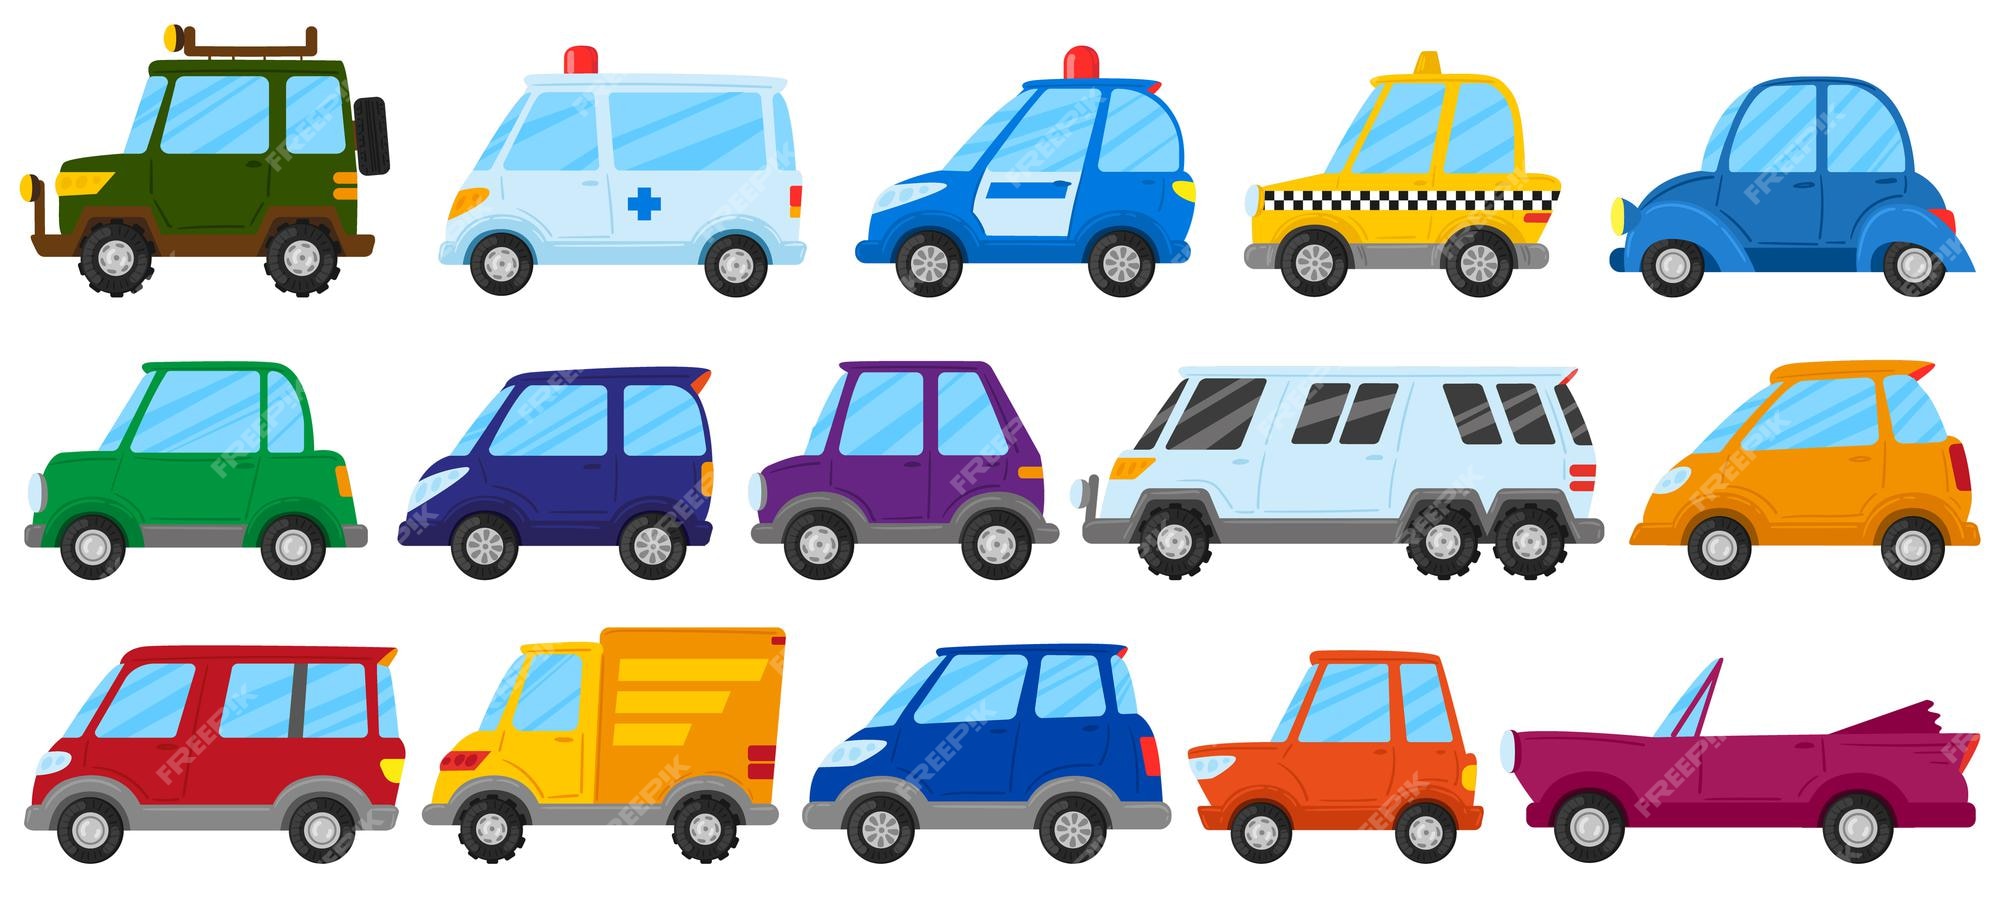 Español Memorándum construir Carros de juguete para niños de dibujos animados, transporte de juego  lindo. coche de juguete para niños, camión, ambulancia y coche de policía  conjunto de ilustraciones vectoriales. vehículos infantiles coloridos |  Vector